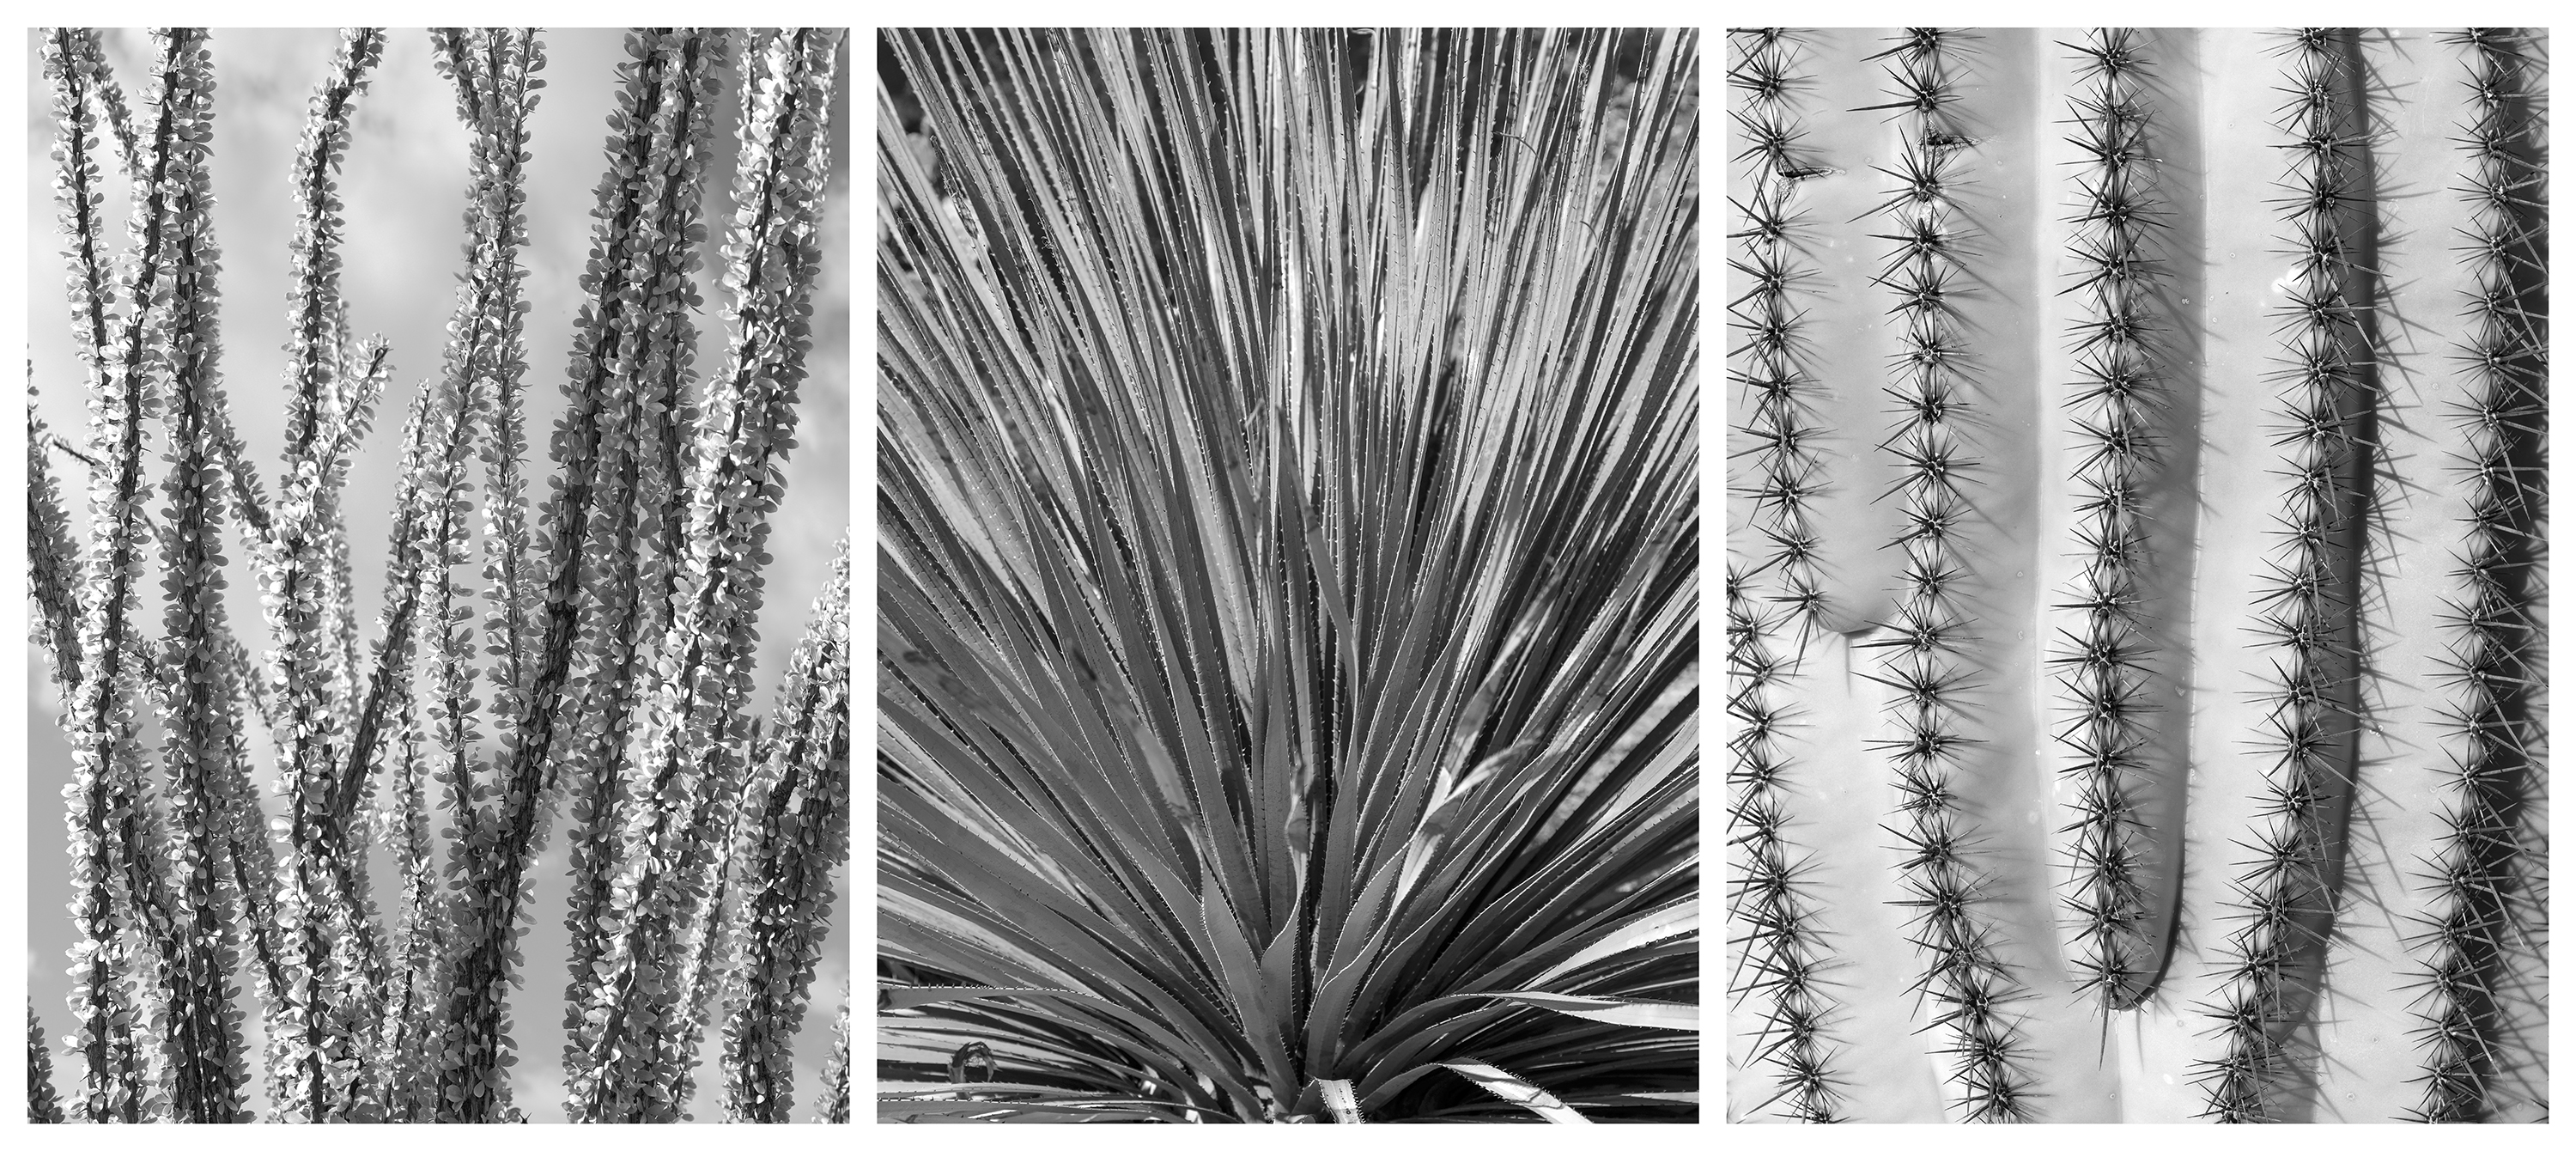 Joachim Bliemeister – Desert plants